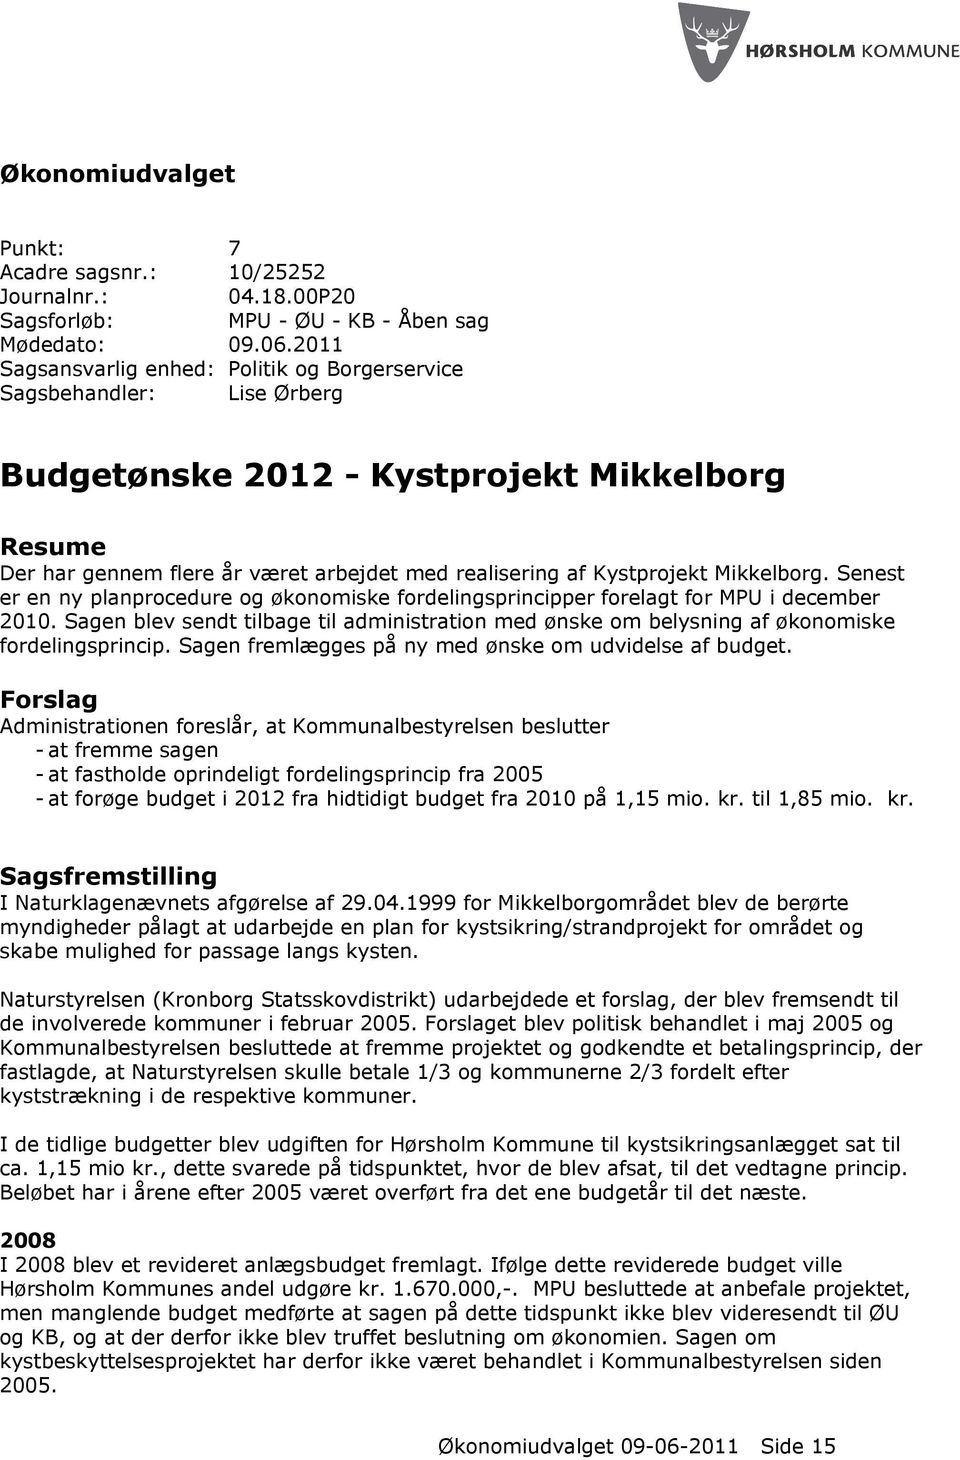 Mikkelborg. Senest er en ny planprocedure og økonomiske fordelingsprincipper forelagt for MPU i december 2010.